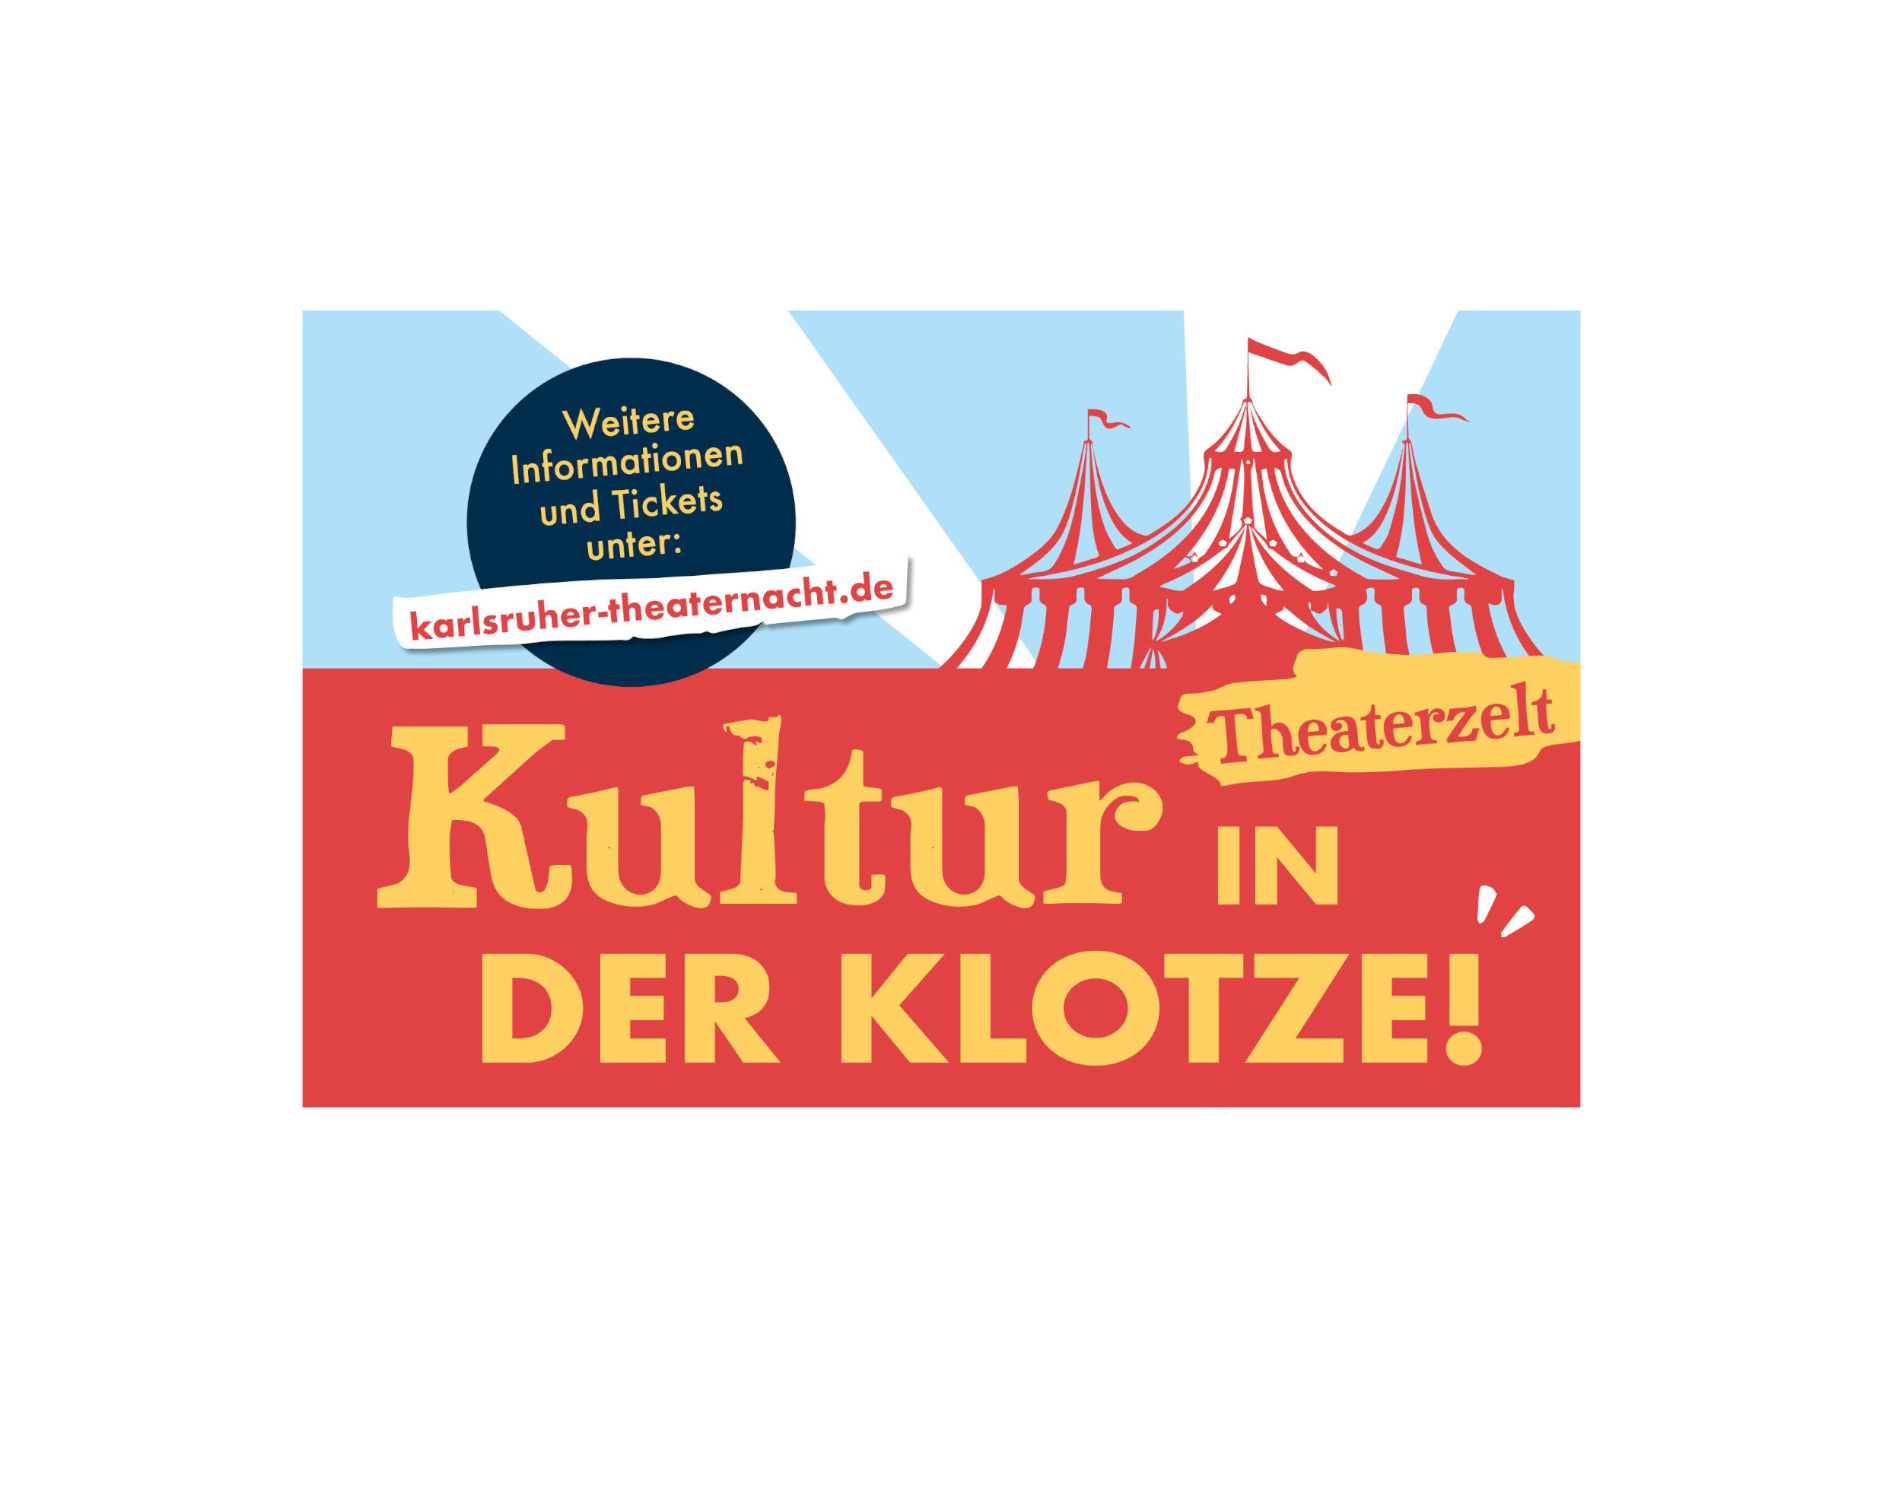 Neustart für die Kultur: Neun Karlsruher Theater bei "Kultur in der Klotze" auf einer Bühne